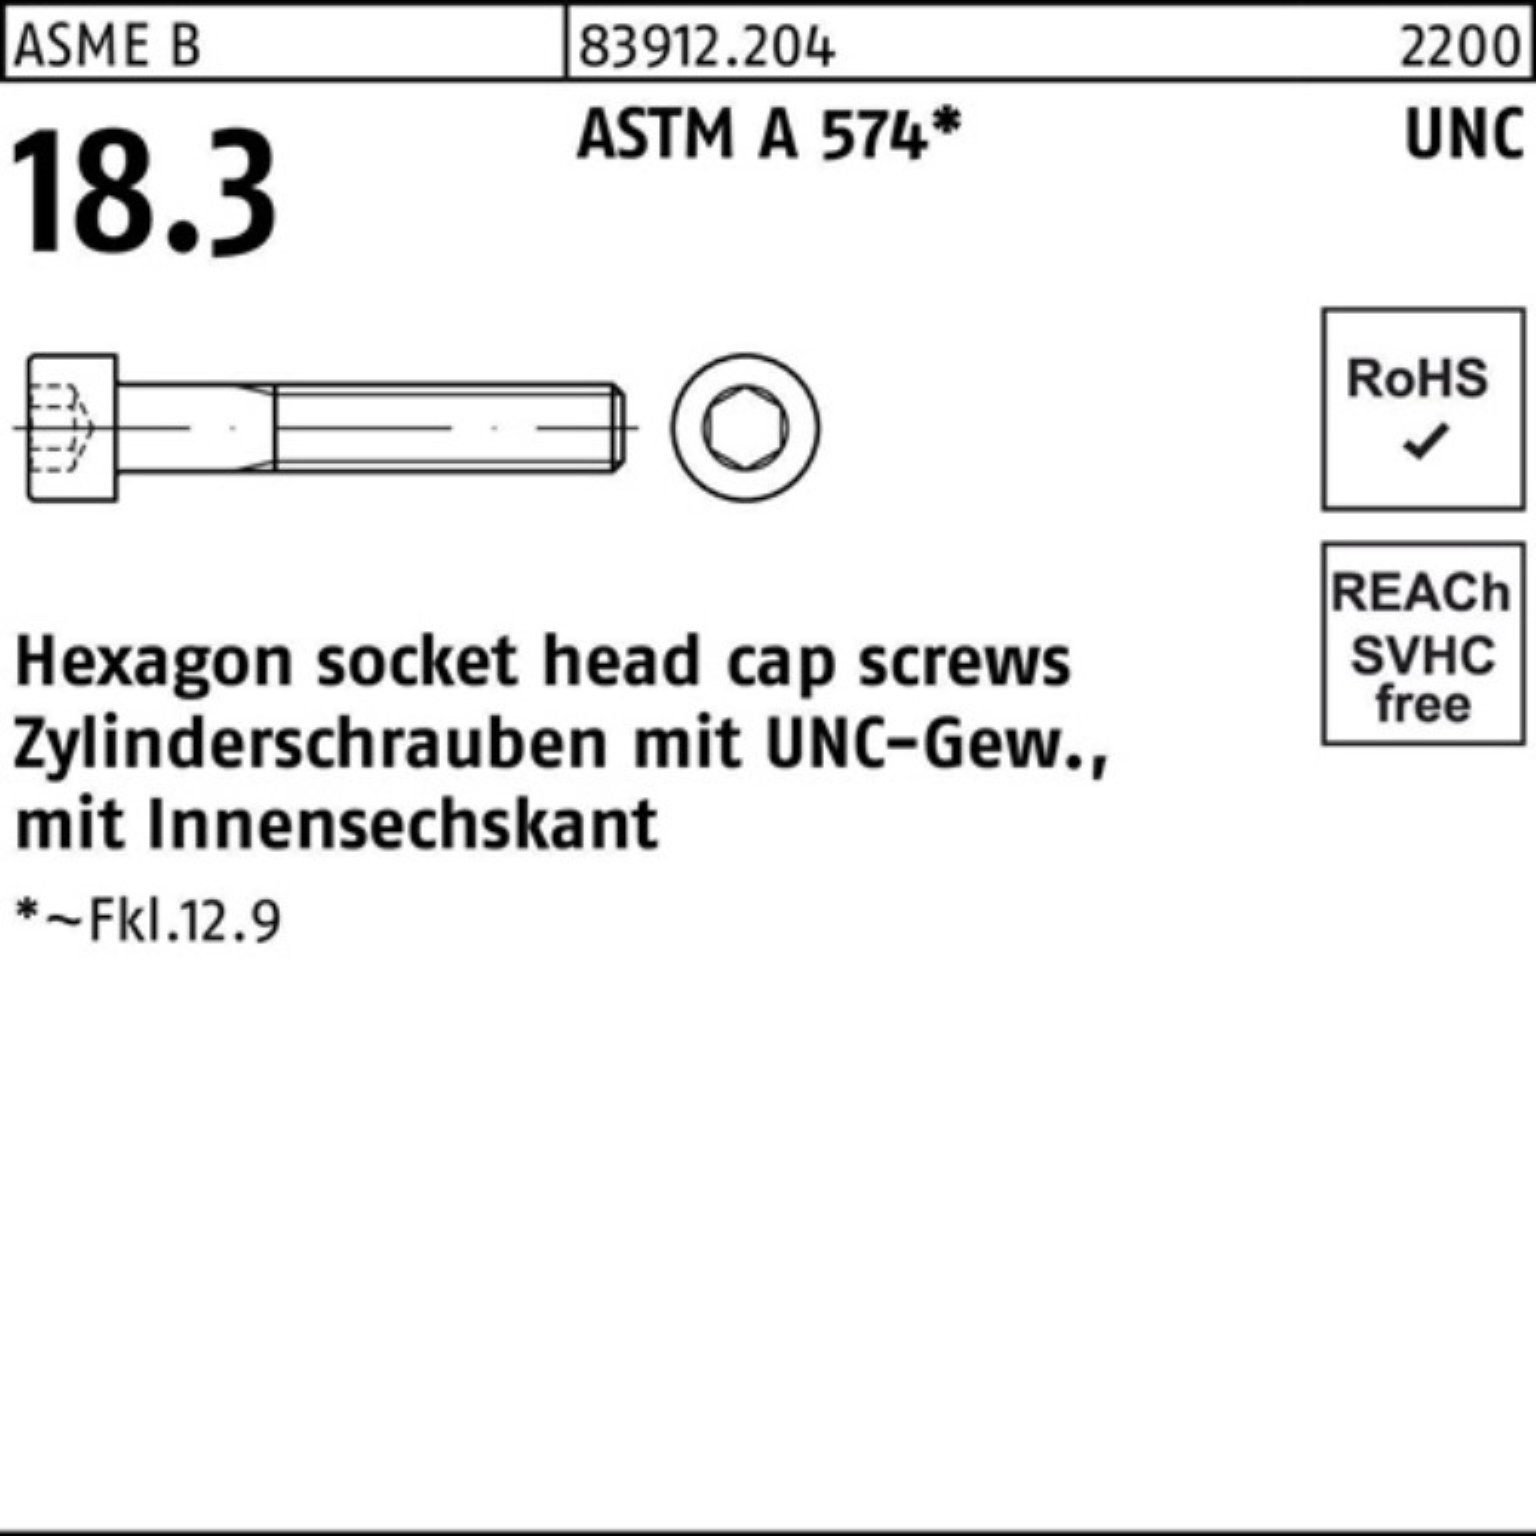 R Zylinderschraube #4x Reyher 83912 Pack 200er ASTM Zylinderschraube UNC-Gewinde/Innen-6kt 3/8